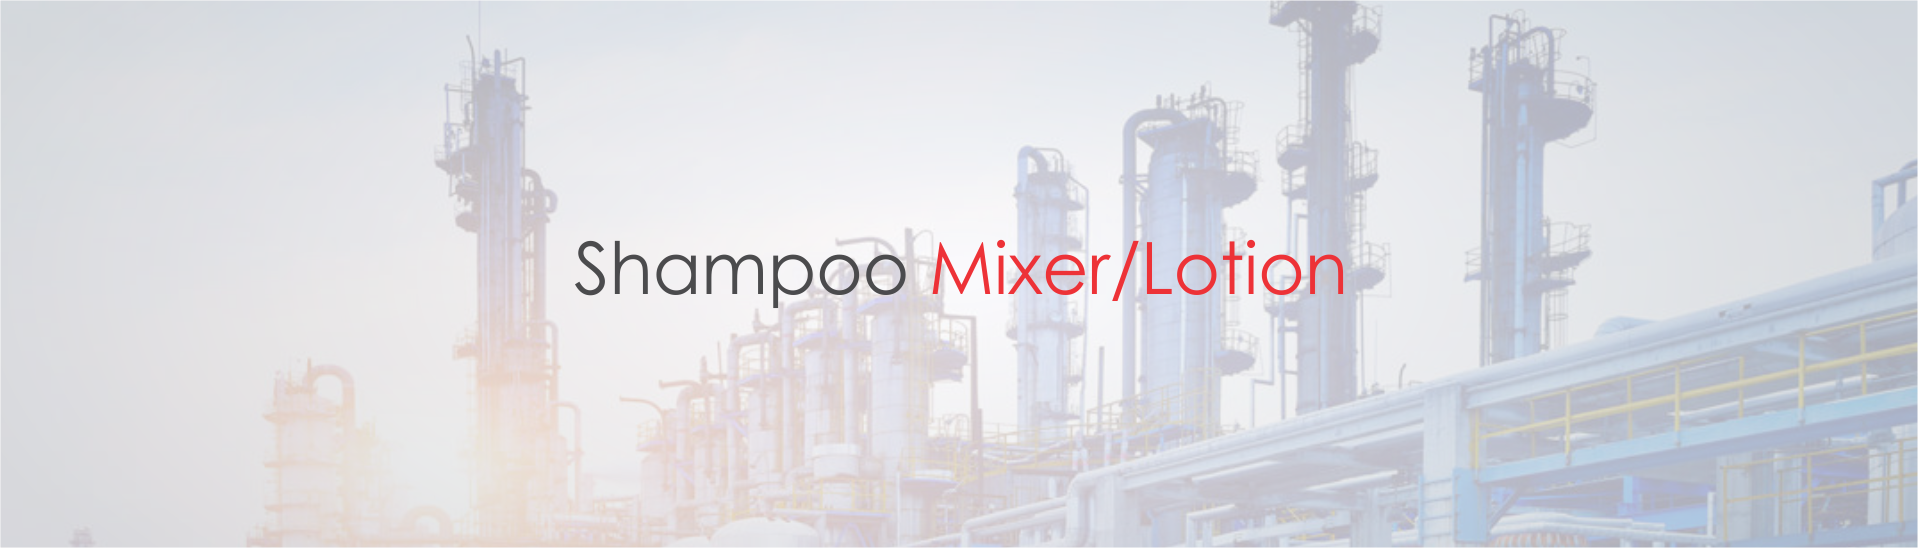 Shampoos Mixer Lotion